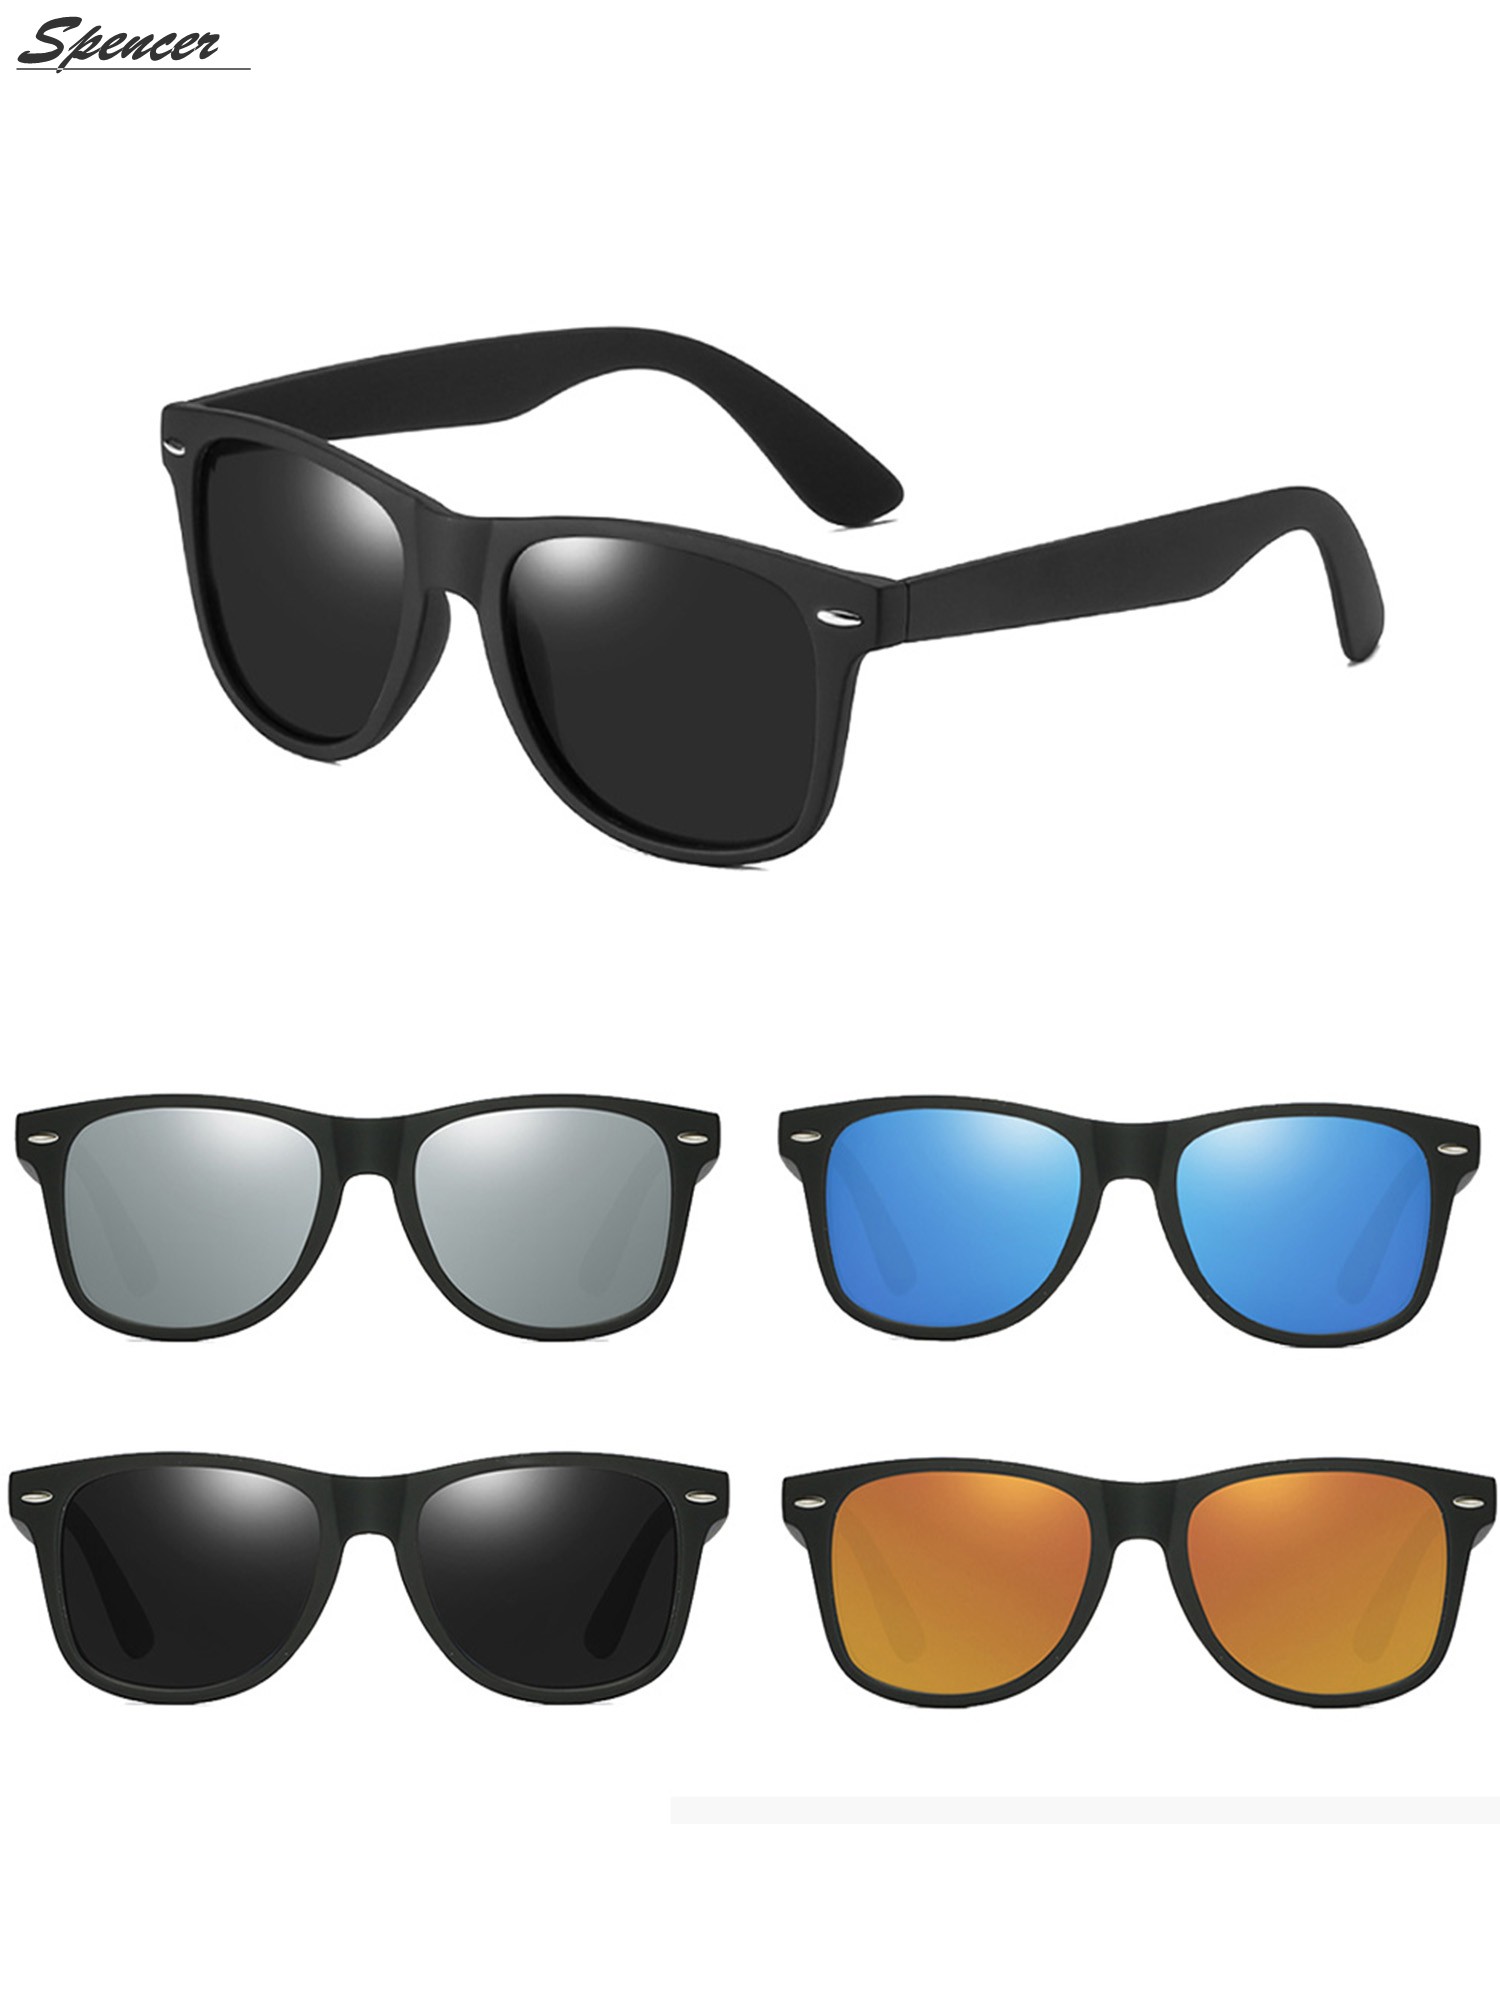 Spencer Retro HD Polarized Colored Mirrored Lens Sunglasses Ultralight Driving UV400 Eyewear Glasses for Men Women "Black+Gray " - image 1 of 6